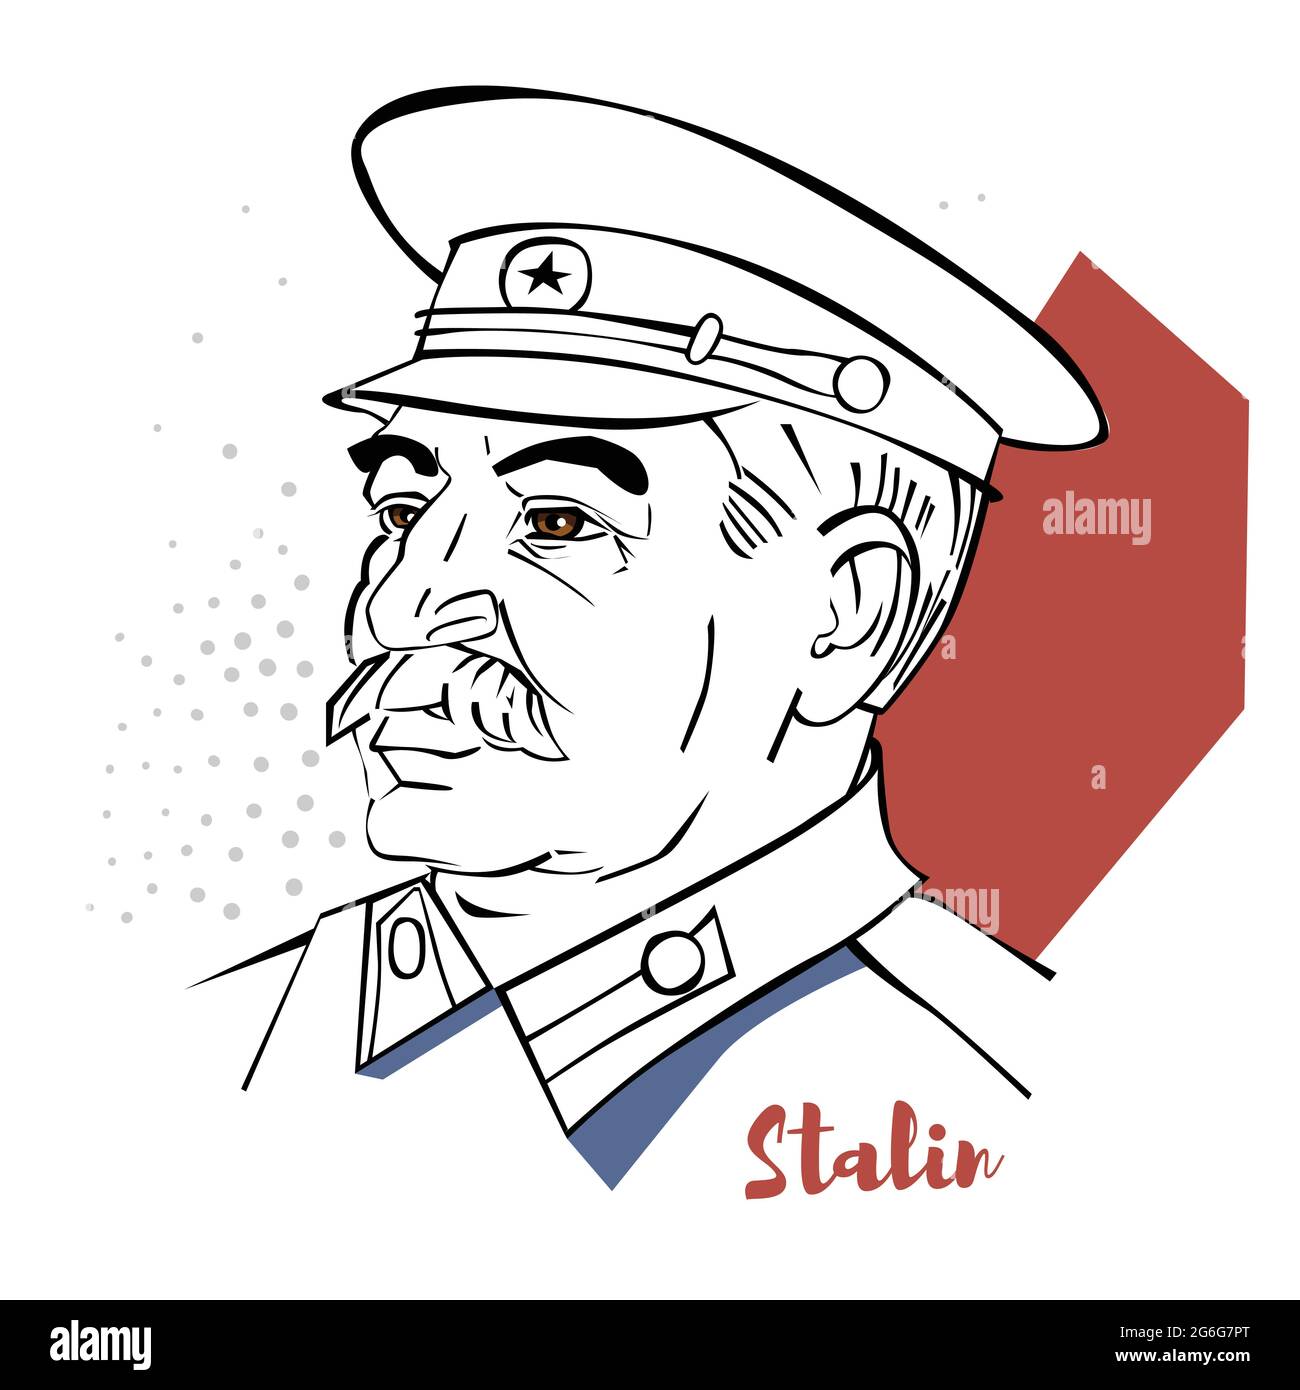 Joseph Stalin flaches Vektor-Porträt mit schwarzen Konturen. Georgischer revolutionärer und sowjetischer Politiker, der die Sowjetunion als Generalsekretär führte Stock Vektor